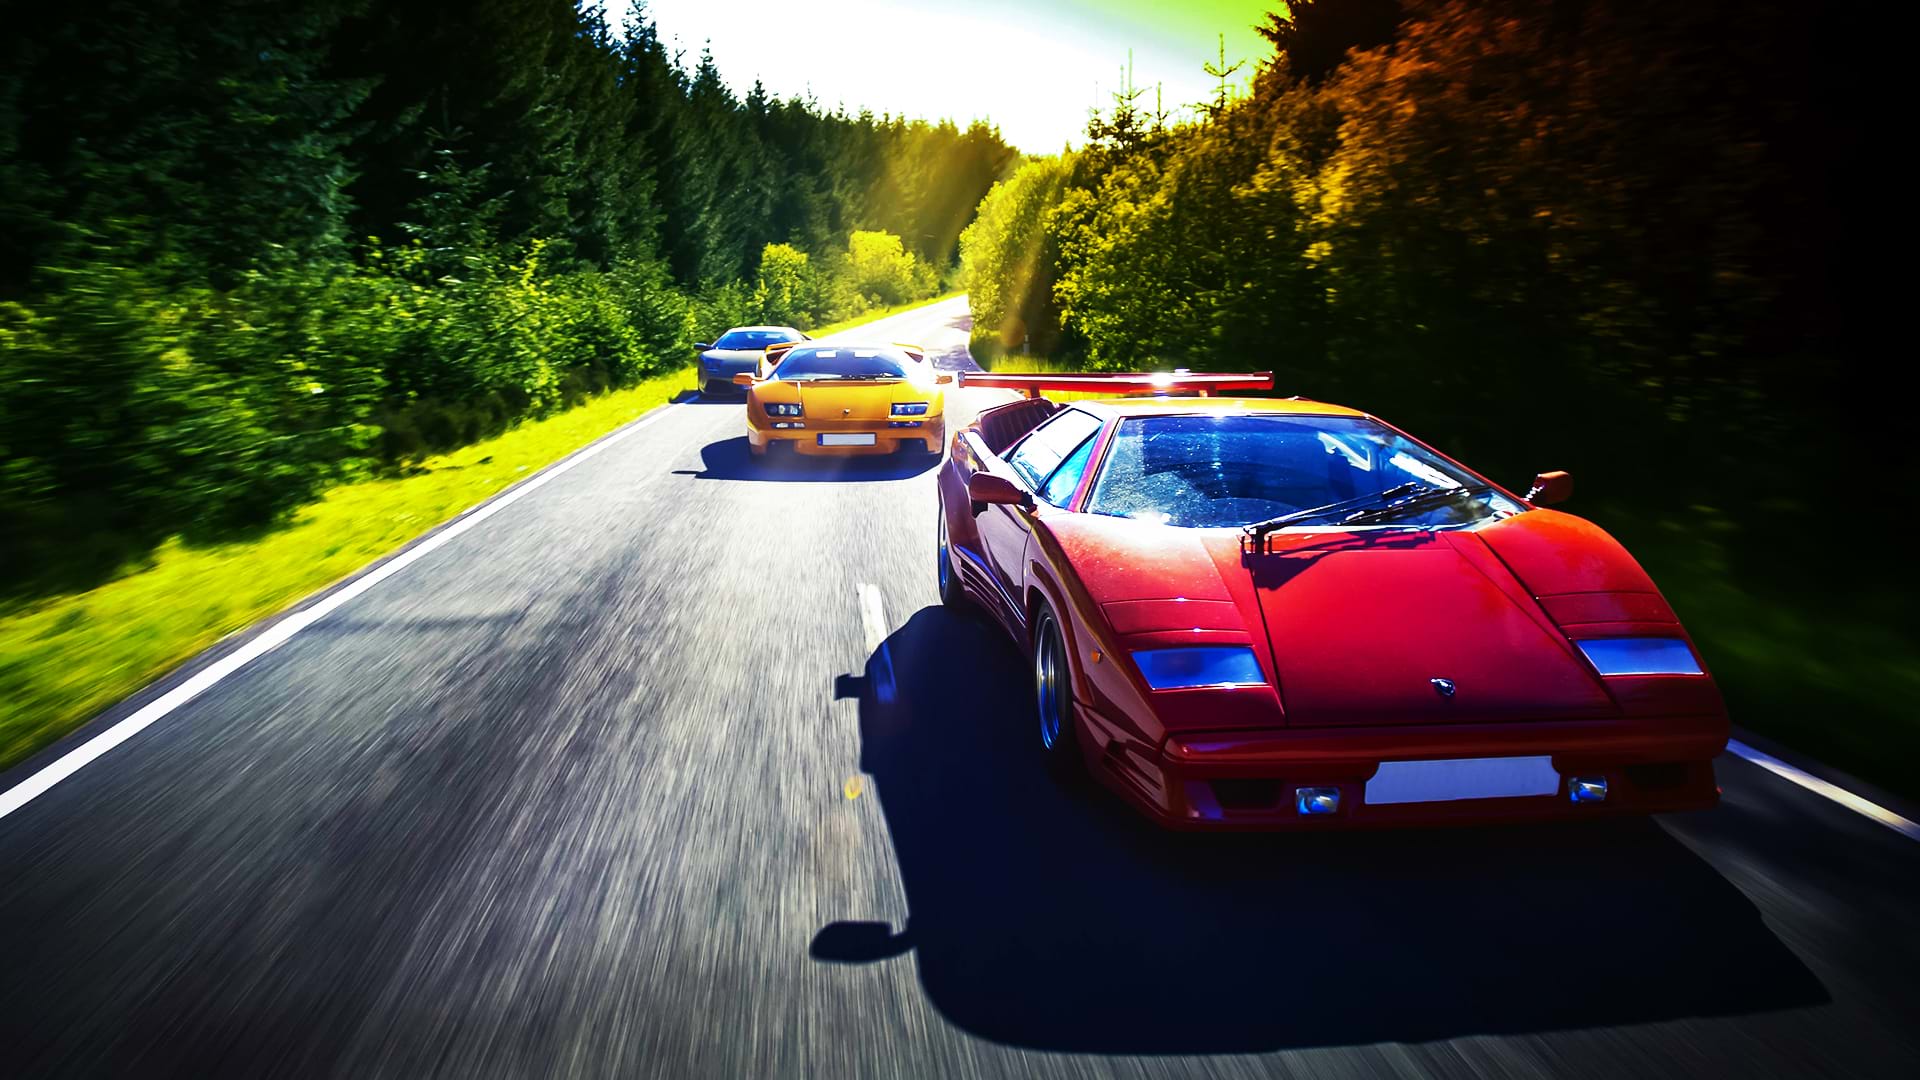 Ein farbenfroher Lamborghini-Konvoi: Countach 25th Anniversary, Diablo 6.0 und Murciélago rast an einem hellen Tag eine Panoramastraße entlang.